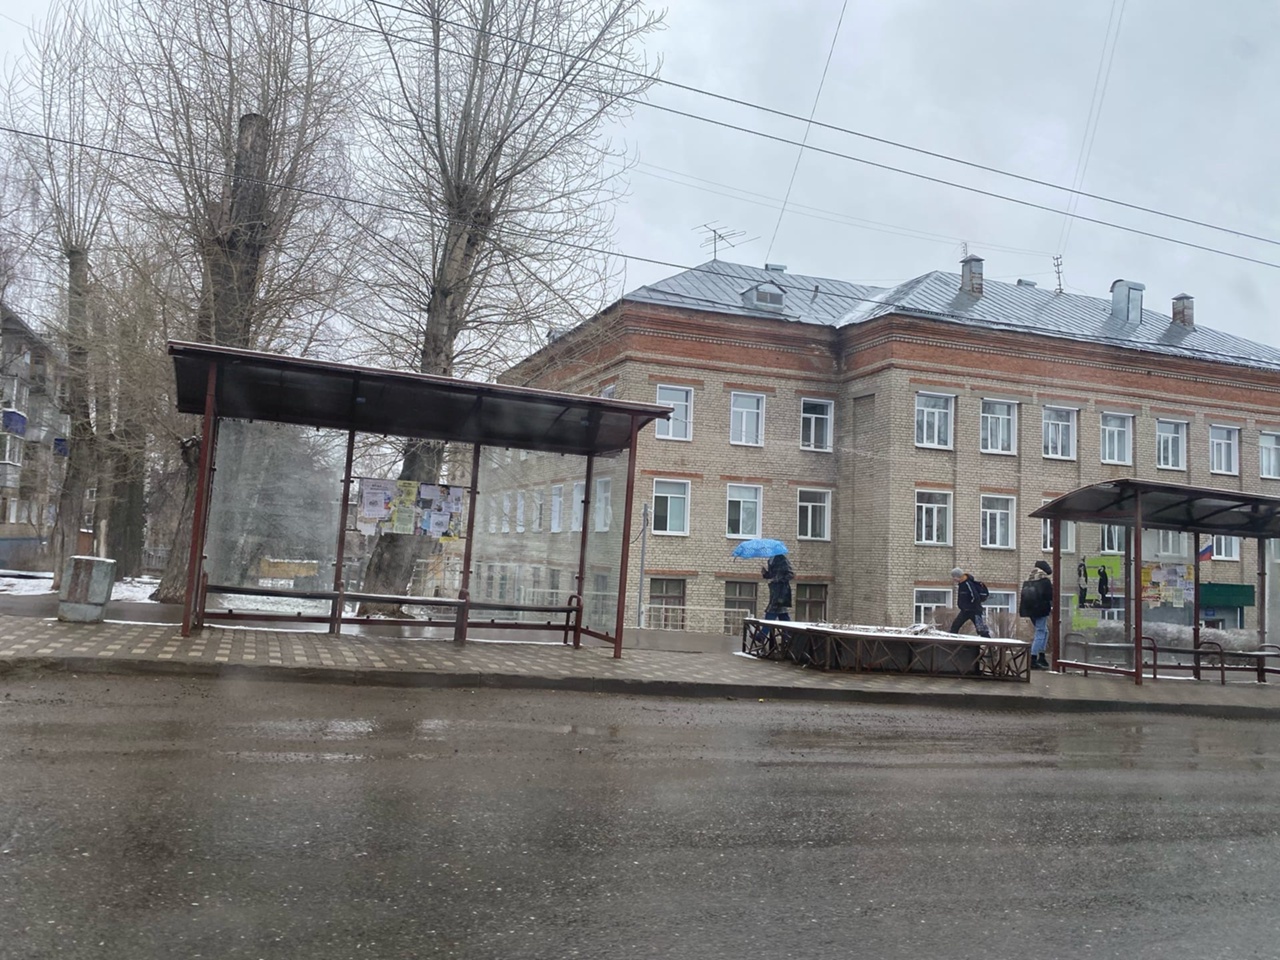  В Кирово-Чепецке изменится расписание автобусных маршрутов